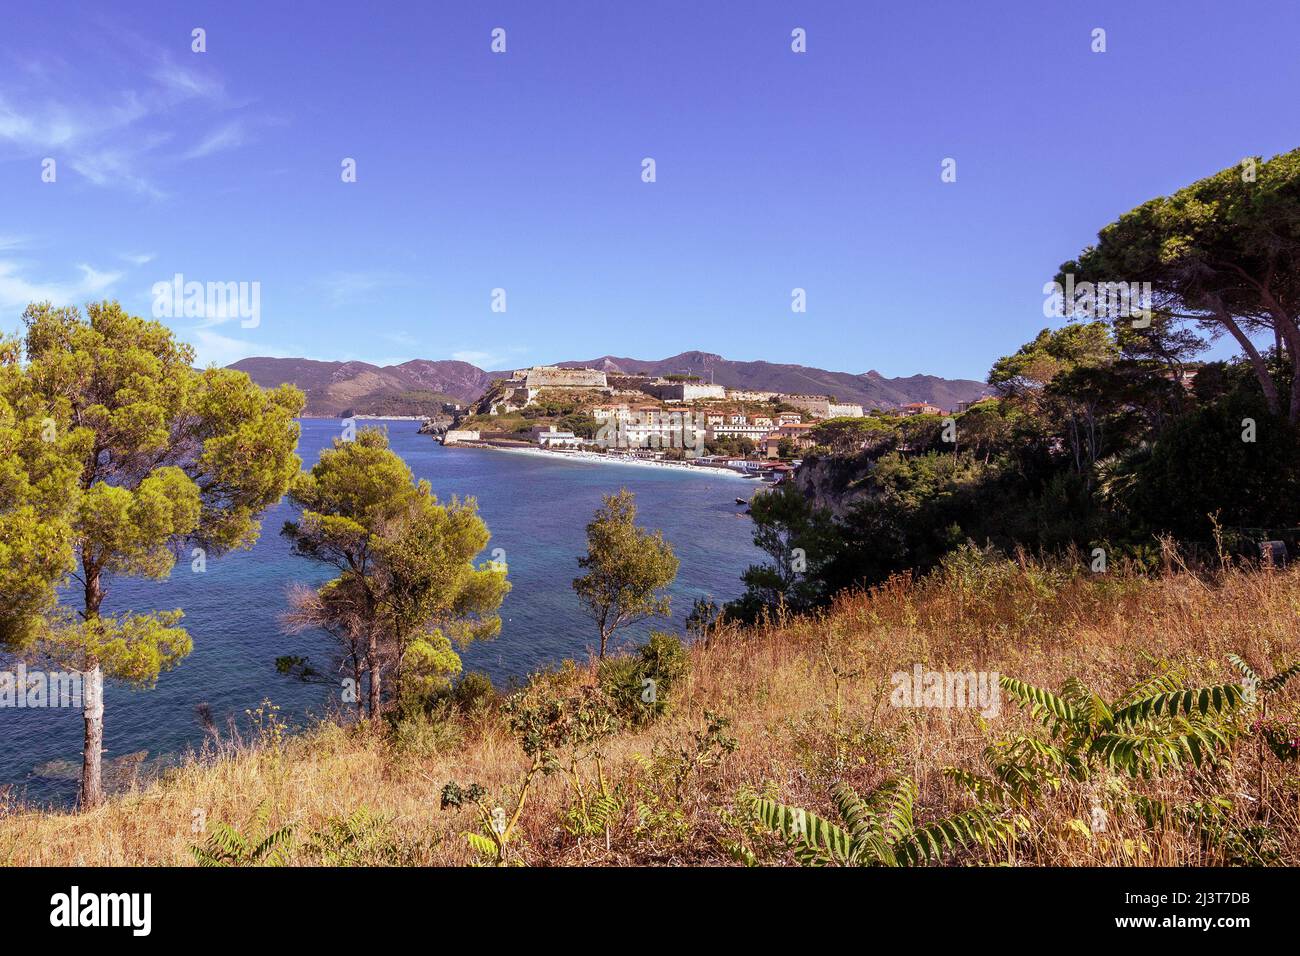 Vista sulla famosa spiaggia le Ghiaie, una piccola spiaggia libera vicino a Forte Falcone Portoferraio, Isola d'Elba, Italia Foto Stock